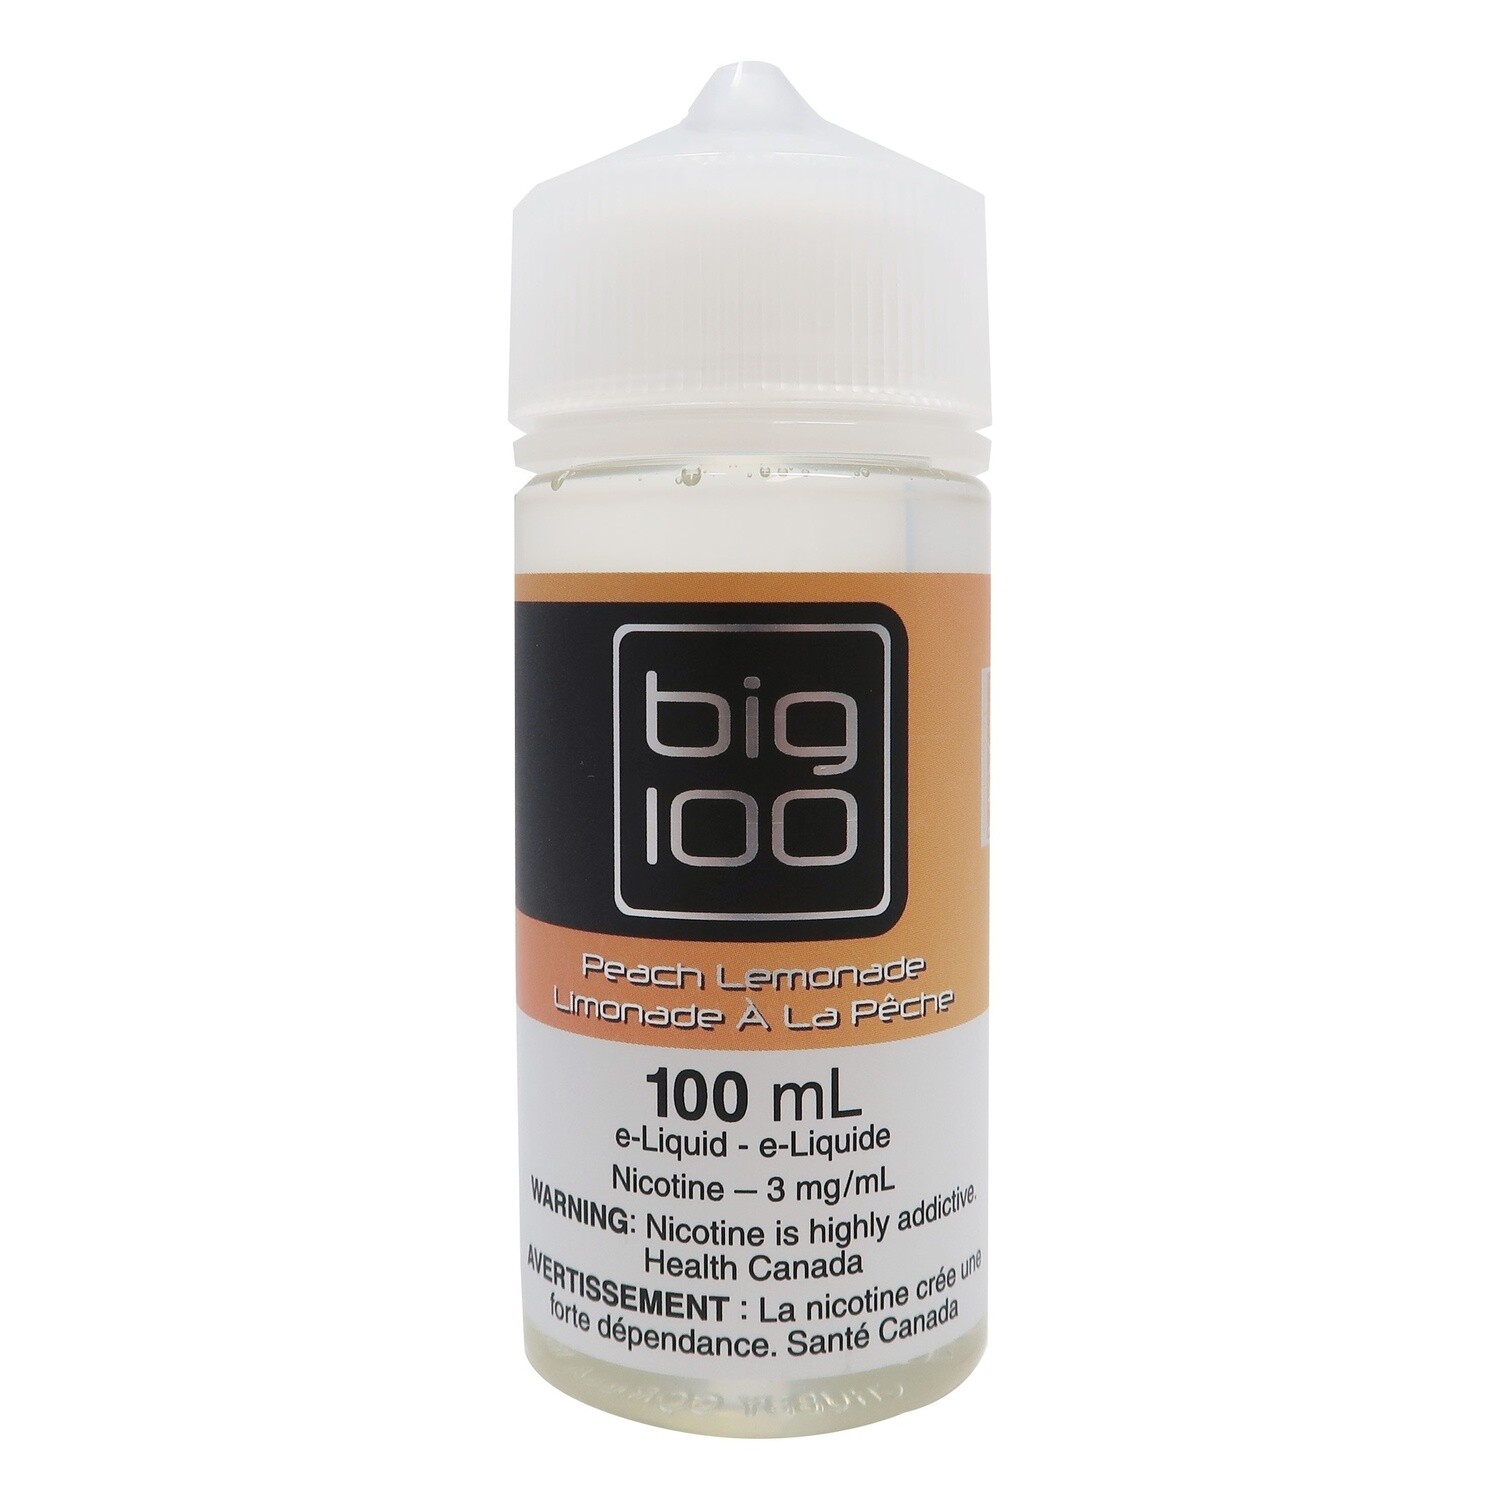 BIG 100 - Peach Lemonade (100ml) Eliquid